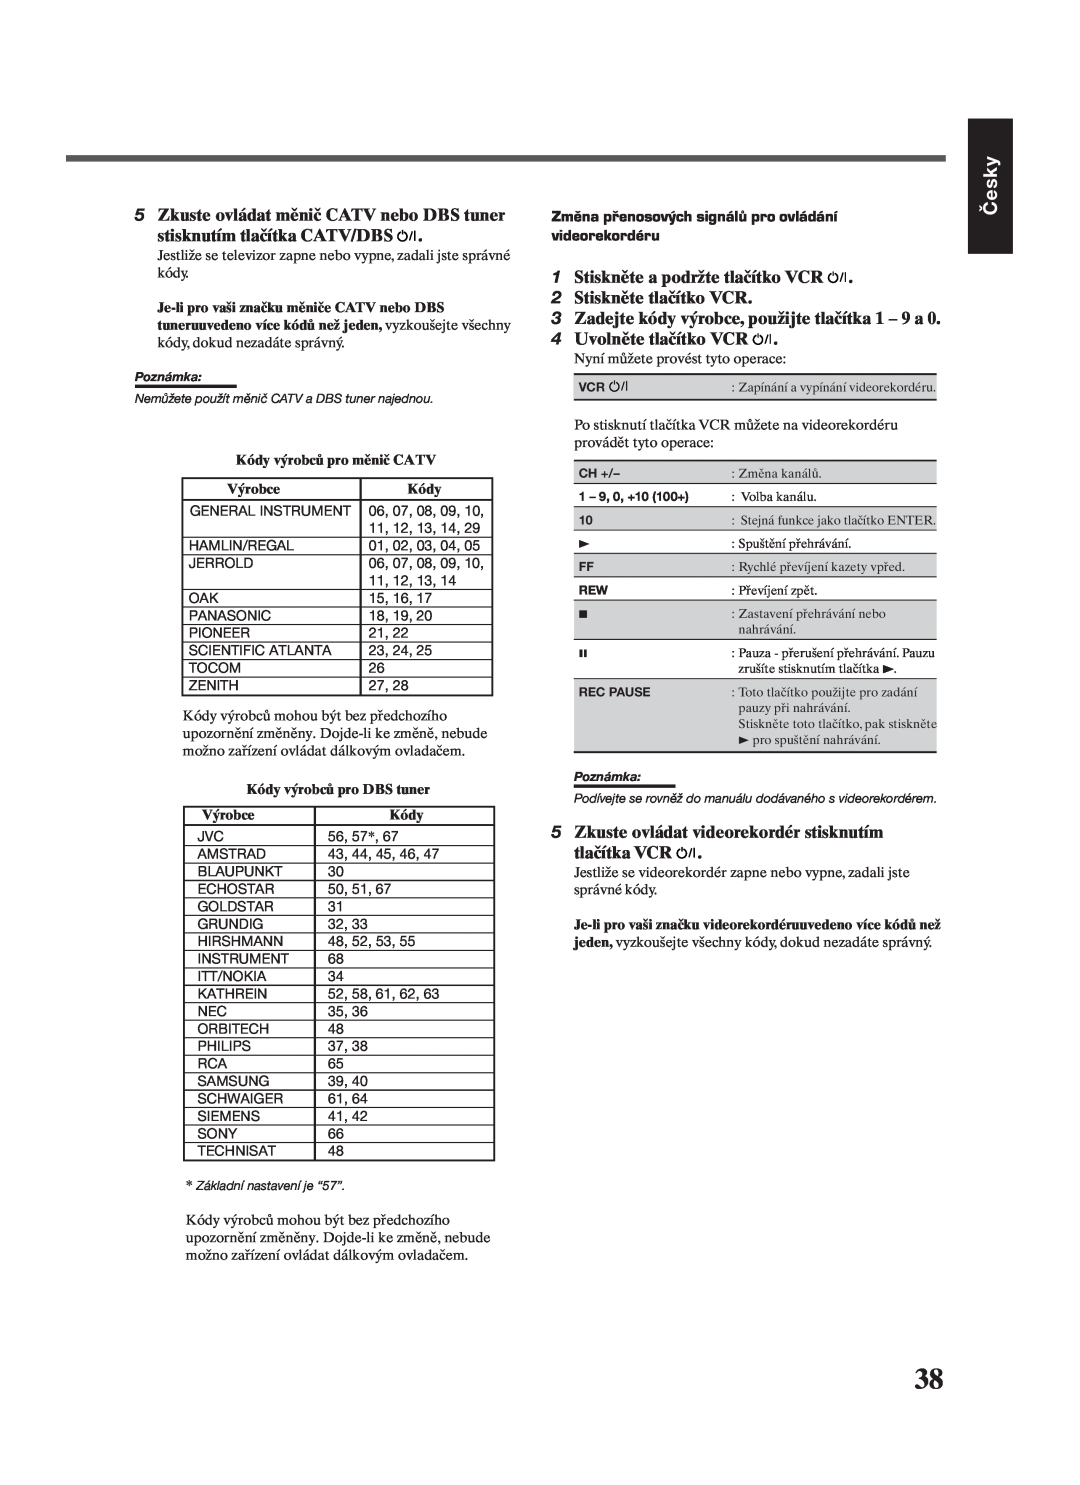 JVC RX-7022RSL manual Česky, Kódy výrobců pro měnič CATV, Výrobce, Kódy výrobců pro DBS tuner 